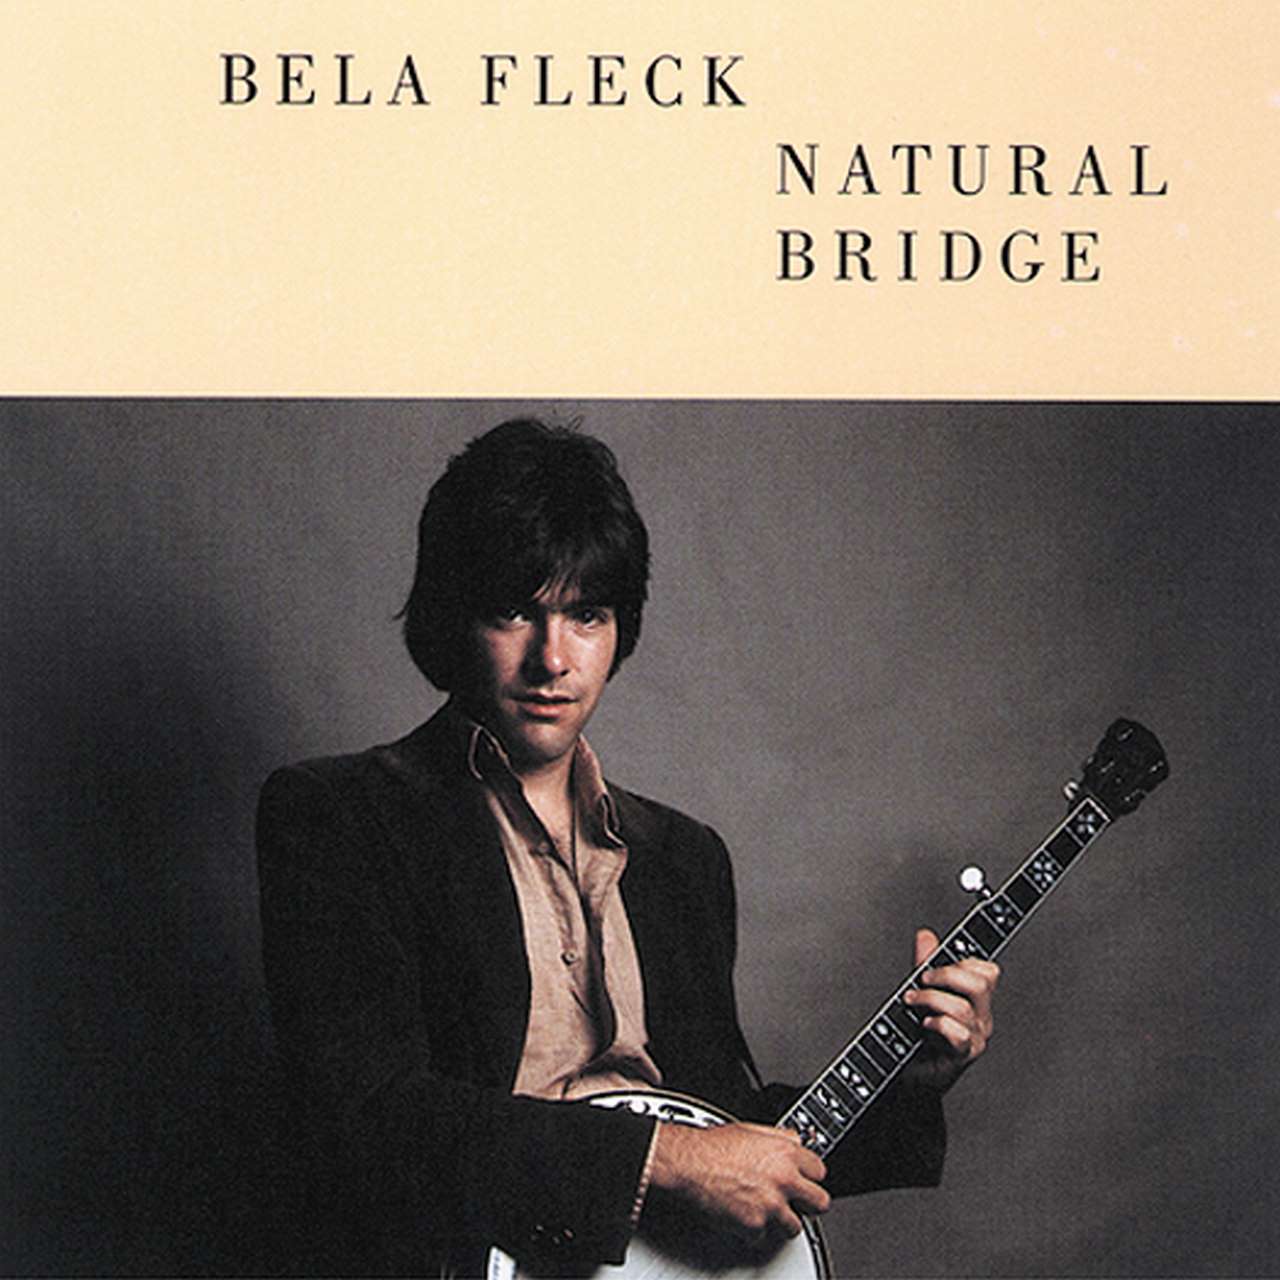 Bela Fleck - Natural Bridge cover album